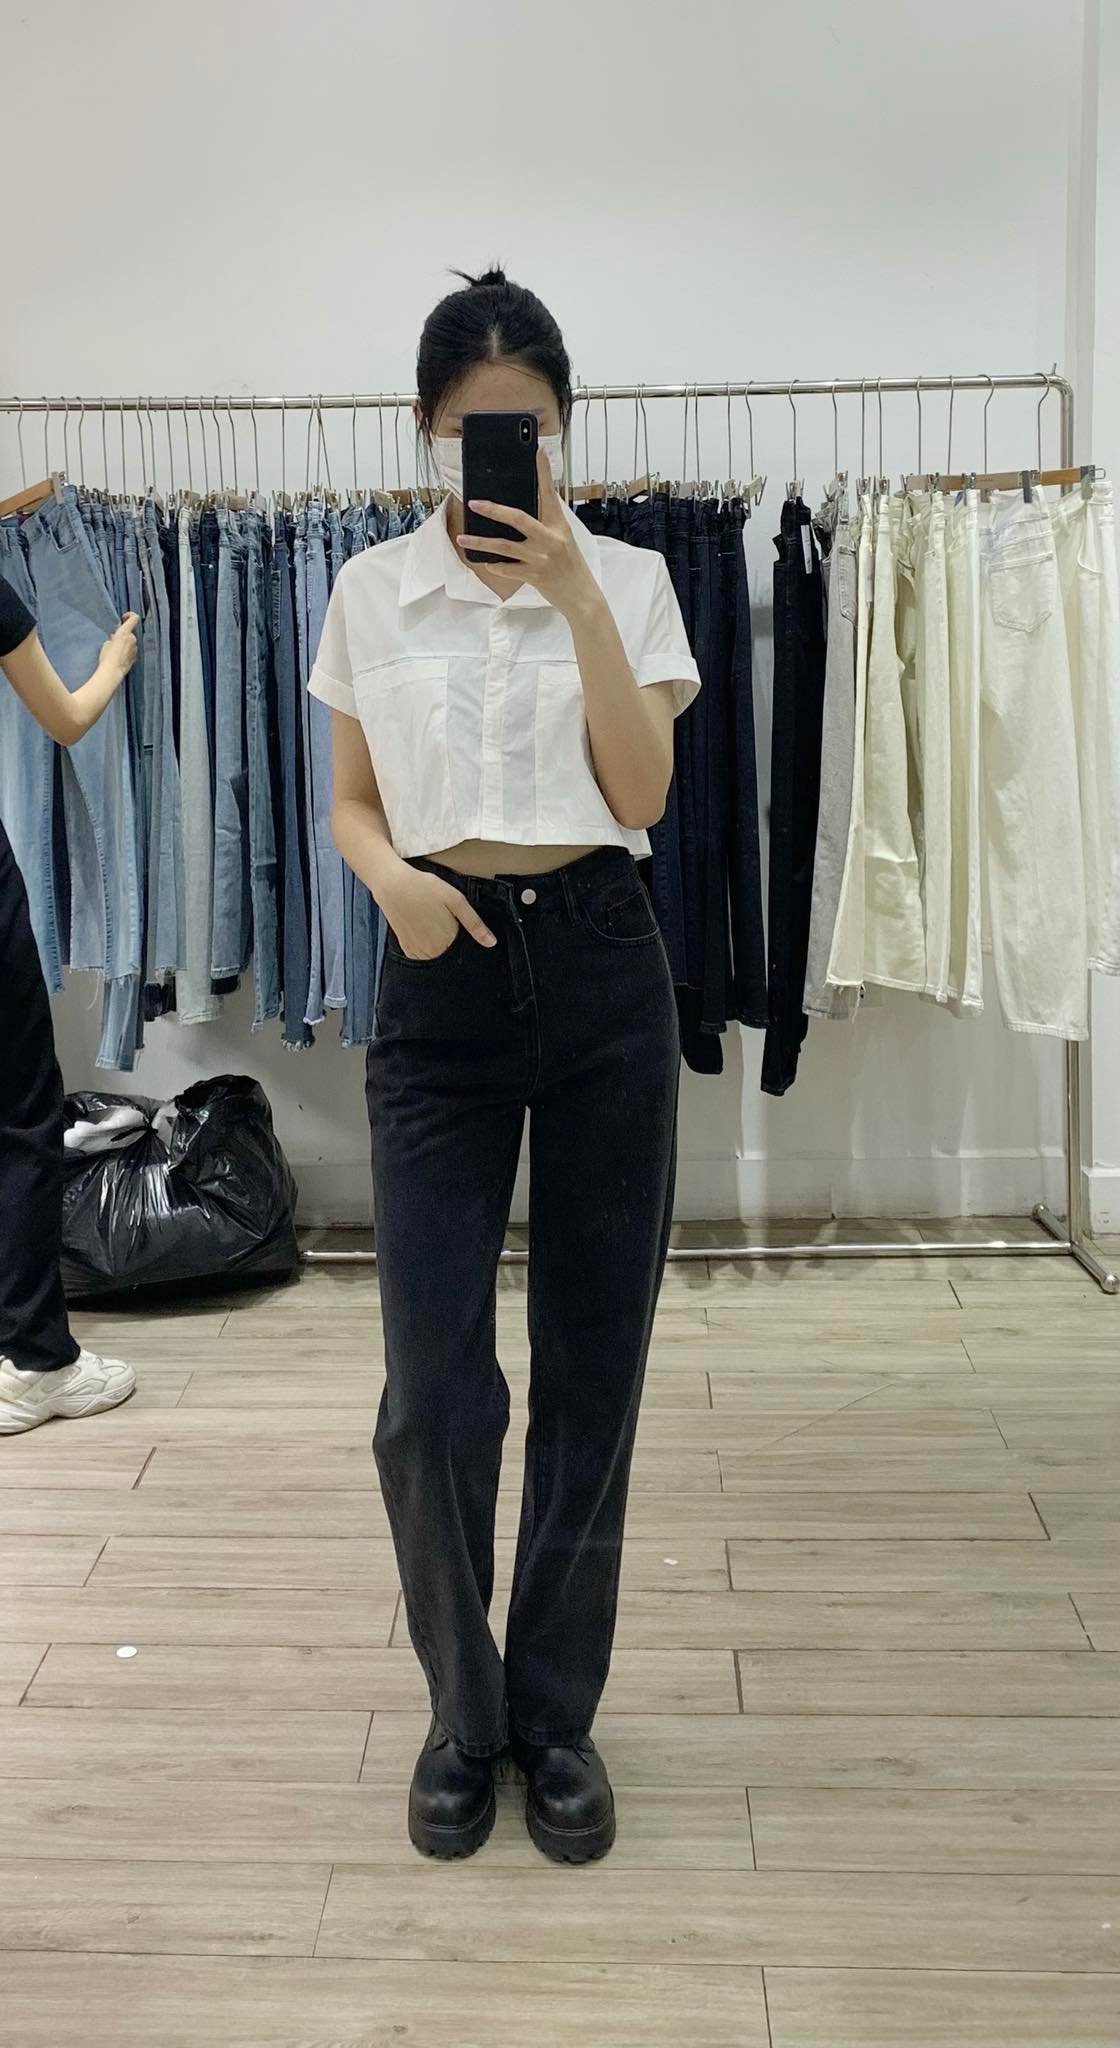 Ghé các shop bán quần jeans ở Hà Nội, mình gom được 10 mẫu đáng mua: Vừa kéo chân lại ăn gian vòng 3 siêu đỉnh - Ảnh 1.